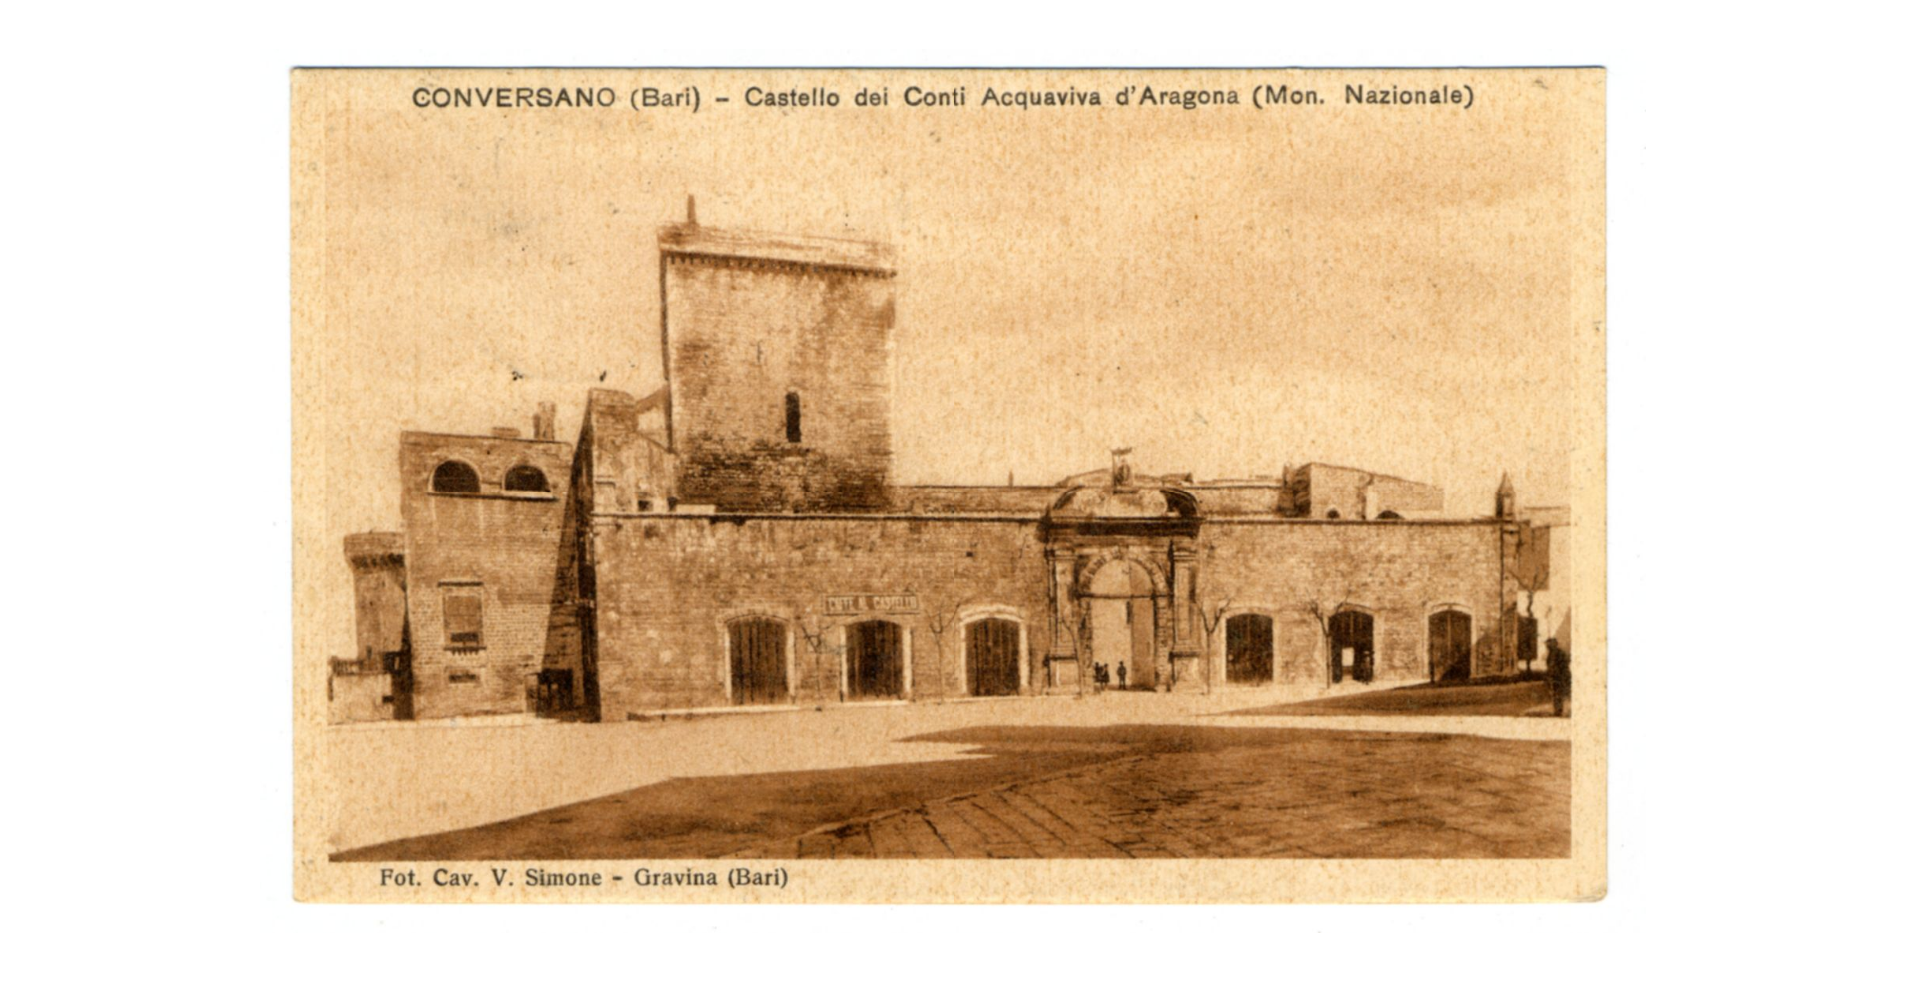 Fotografo non identificato, Conversano - Castello dei conti Acquaviva d'Aragona(Monumento Nazionale), 1938, cartolina, FFC040220